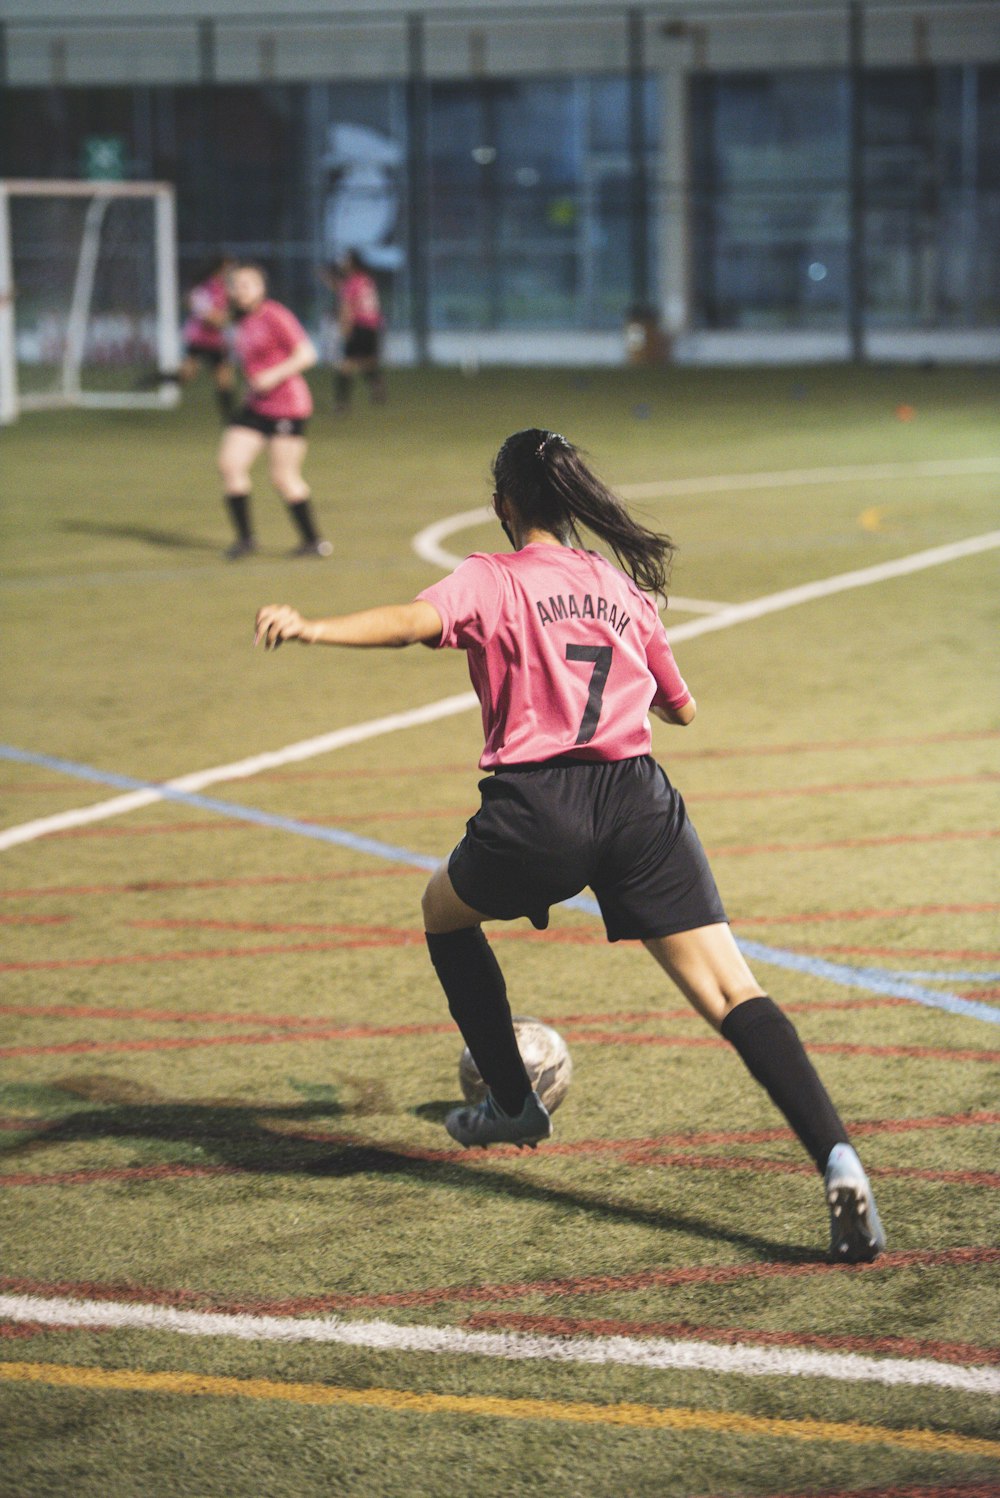 Imágenes de Futbol De Chicas | Descarga imágenes gratuitas en Unsplash